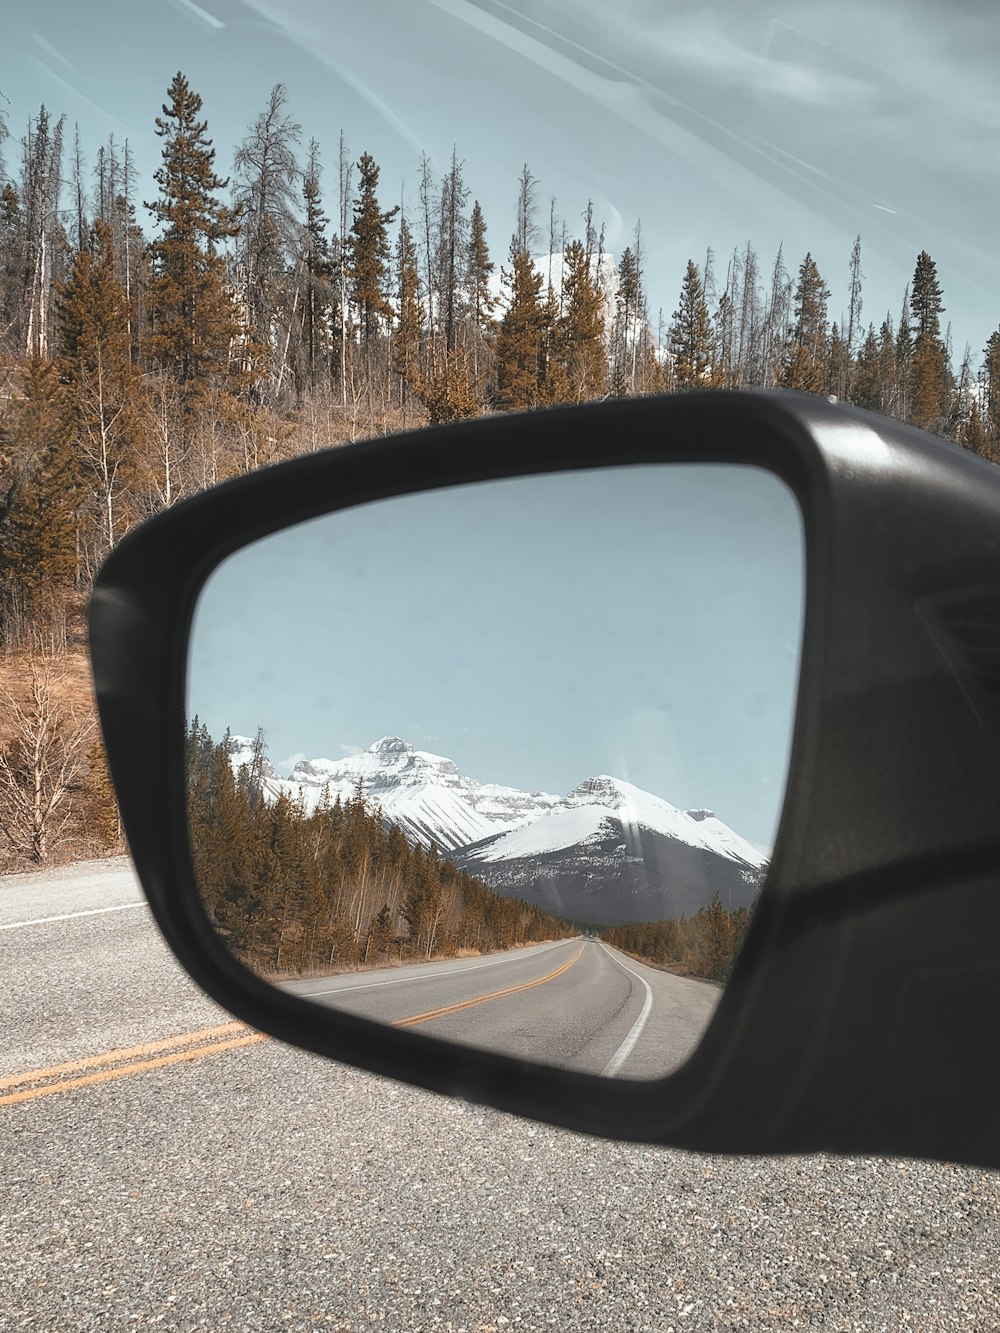 Espejo lateral del coche que muestra la montaña cubierta de nieve